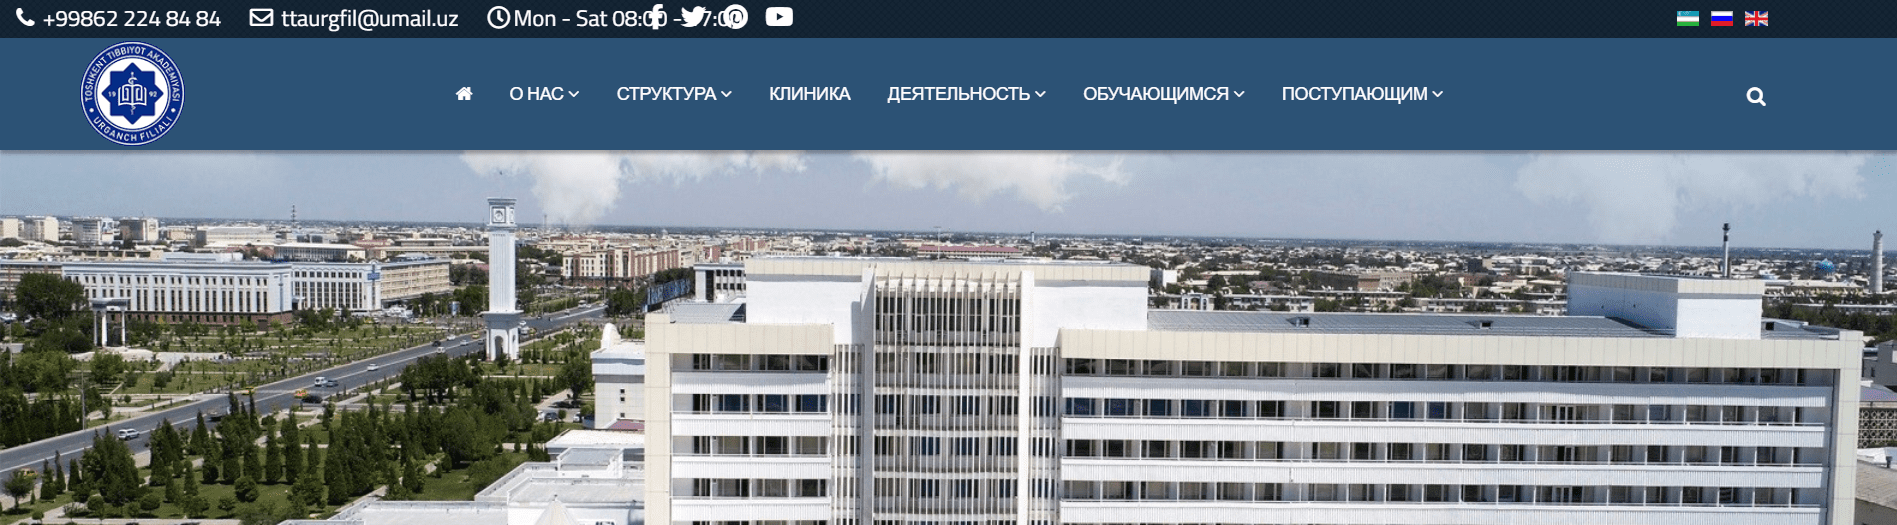 Ургенчский филиал Ташкентской медицинской академии (urgfiltma.uz) - официальный сайт